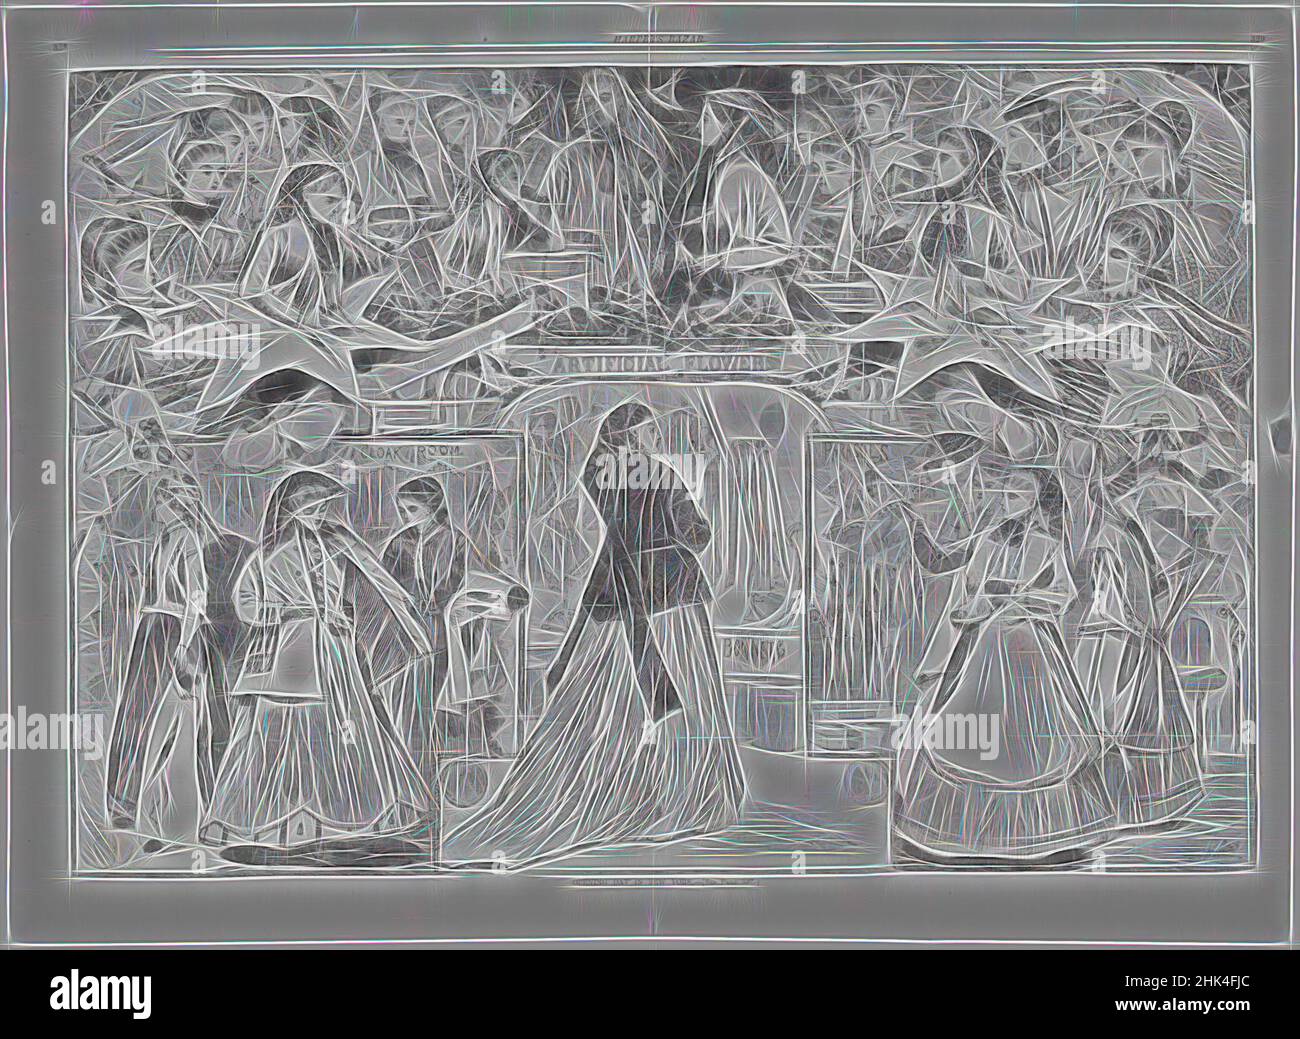 Ispirato al giorno di apertura a New York, Winslow Homer, americano, 1836-1910, incisione del legno, 1868, immagine: 13 5/8 x 20 1/8 pollici, 34,6 x 51,1 cm, reinventata da Artotop. L'arte classica reinventata con un tocco moderno. Design di calda e allegra luminosità e di raggi di luce. La fotografia si ispira al surrealismo e al futurismo, abbracciando l'energia dinamica della tecnologia moderna, del movimento, della velocità e rivoluzionando la cultura Foto Stock